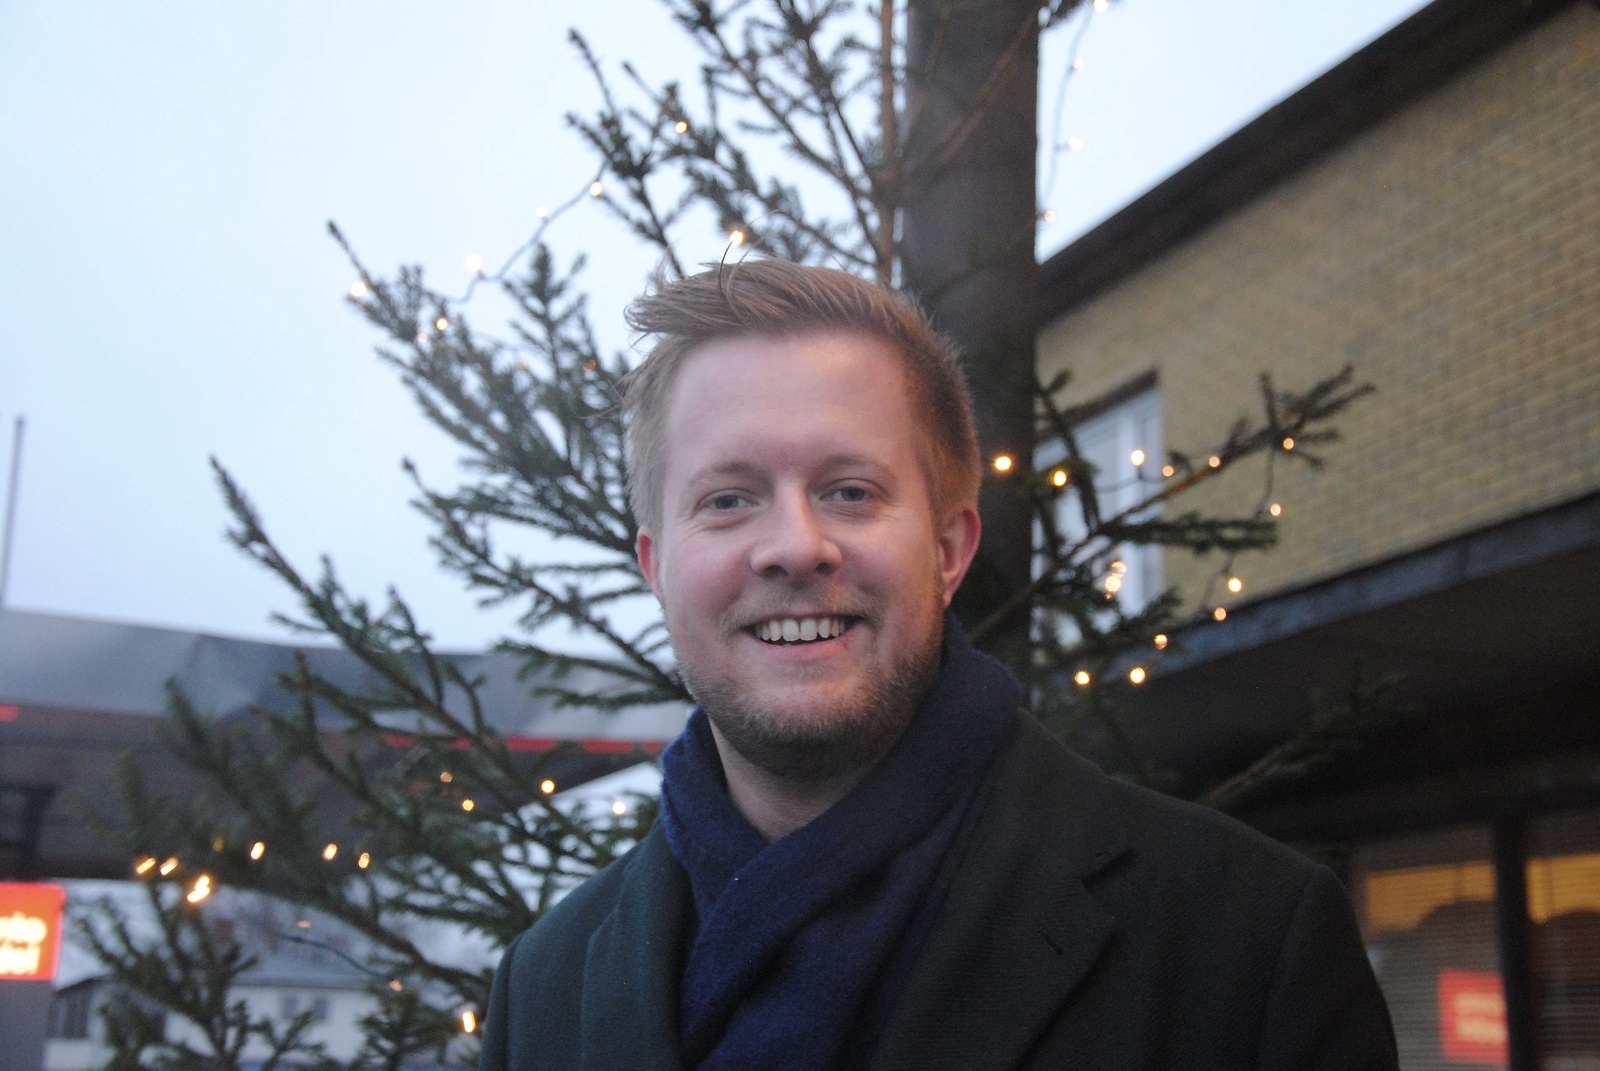 Vilket är ditt bästa julklappstips? Niklas Larsson, kommunalråd (C): En upplevelse, kanske en dag på ett spa, men det mest betydelsefulla är att vara med nära och kära.                                                           FOTO: SUSANNE GÄRE